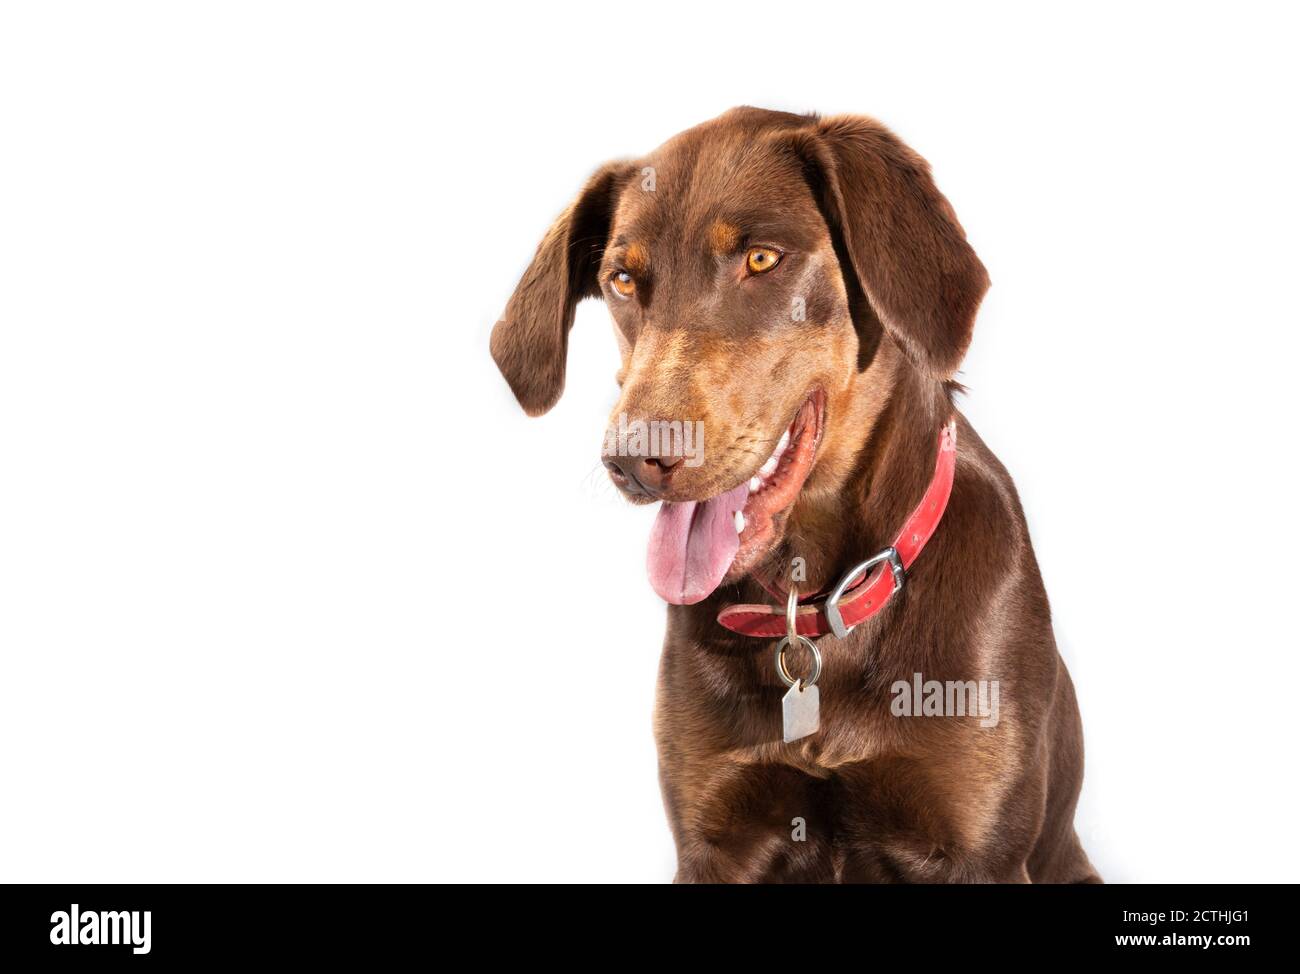 Immagine della testa del puntatore da laboratorio o del Pointerdor. Un cane di razza mista tra un Retriever Labrador e un puntatore. Il cane femmina adulto marrone sta guardando giù con il mo Foto Stock